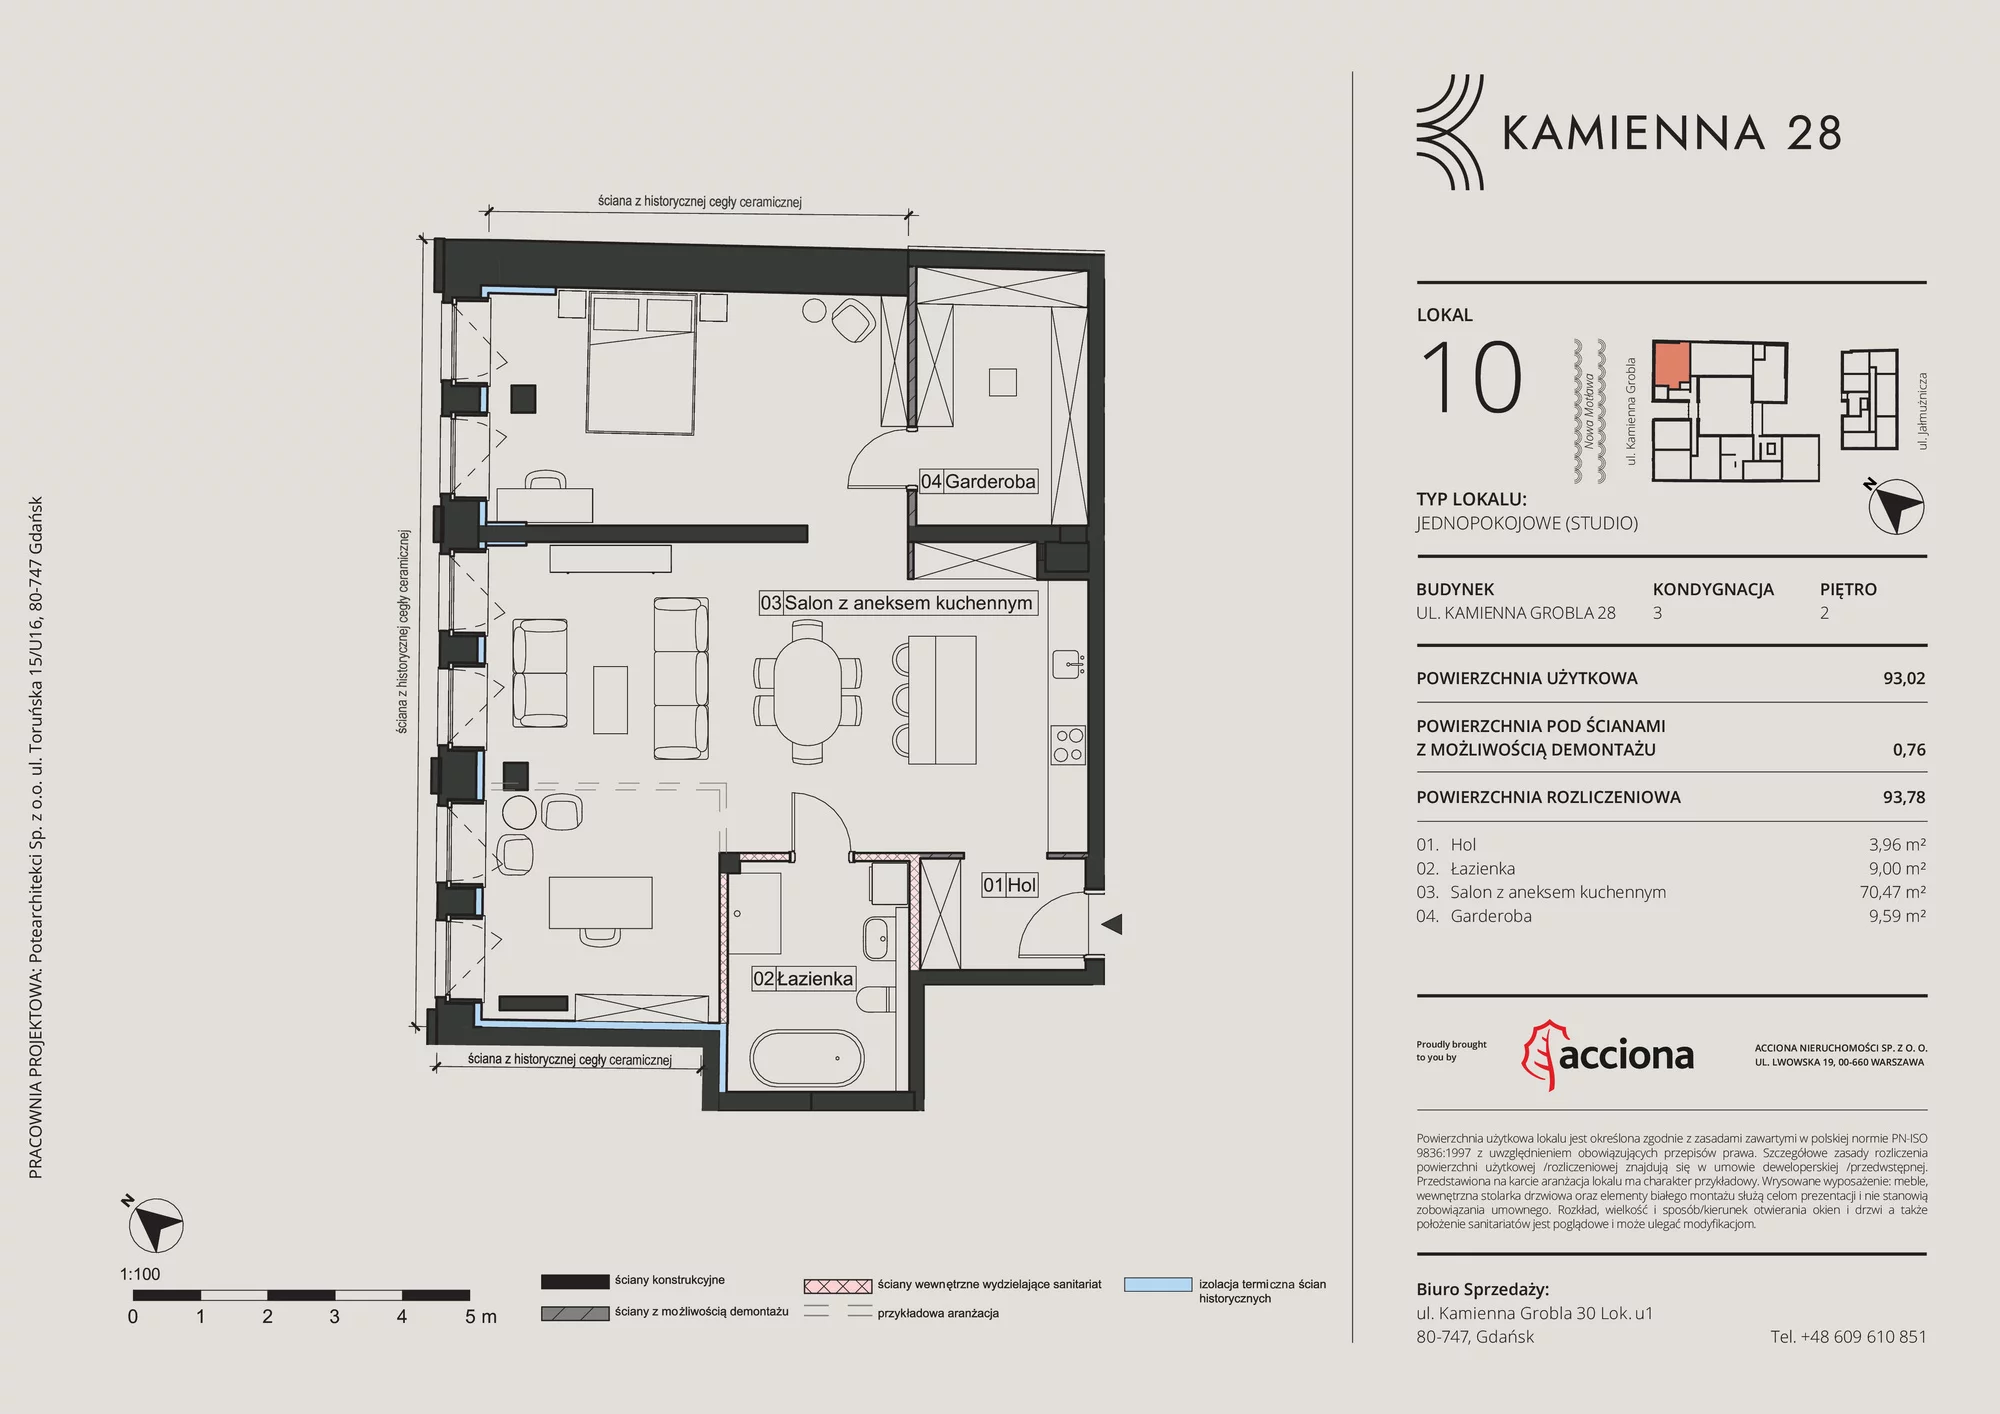 Apartament 93,78 m², piętro 2, oferta nr 28.10, Kamienna 28, Gdańsk, Śródmieście, Dolne Miasto, ul. Kamienna Grobla 28/29